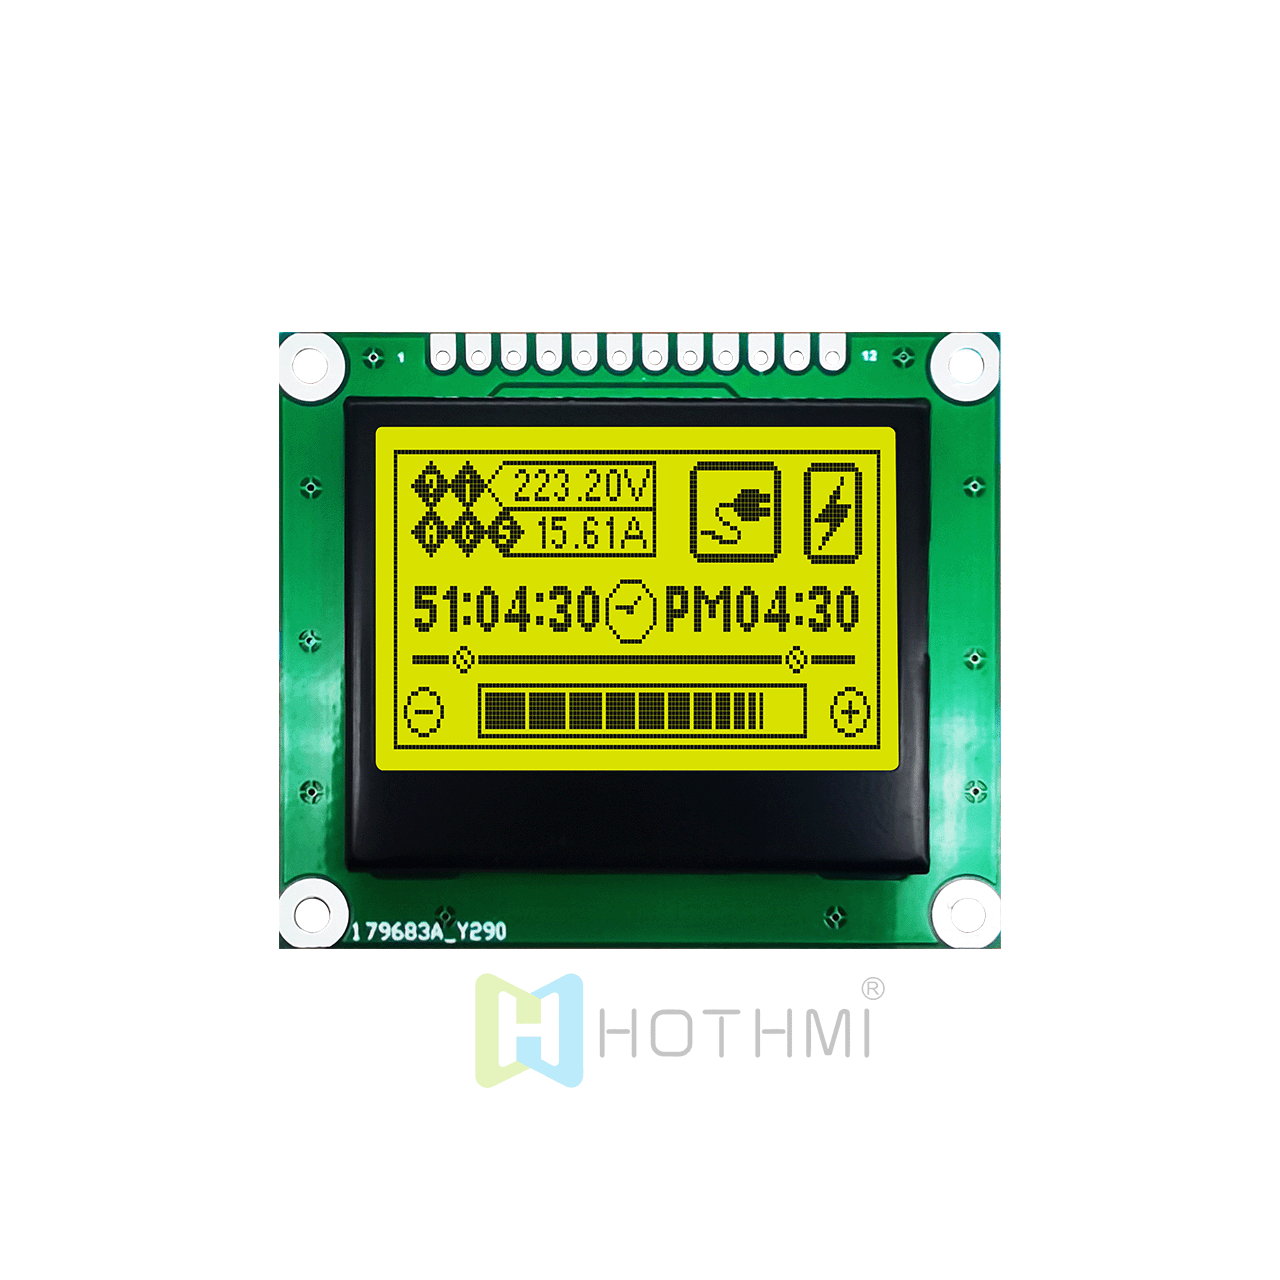 1.7 英寸 128x64 图形液晶块 | 128 x 64 图形 LCD  |  | STN +黄绿背光 | 3.3V